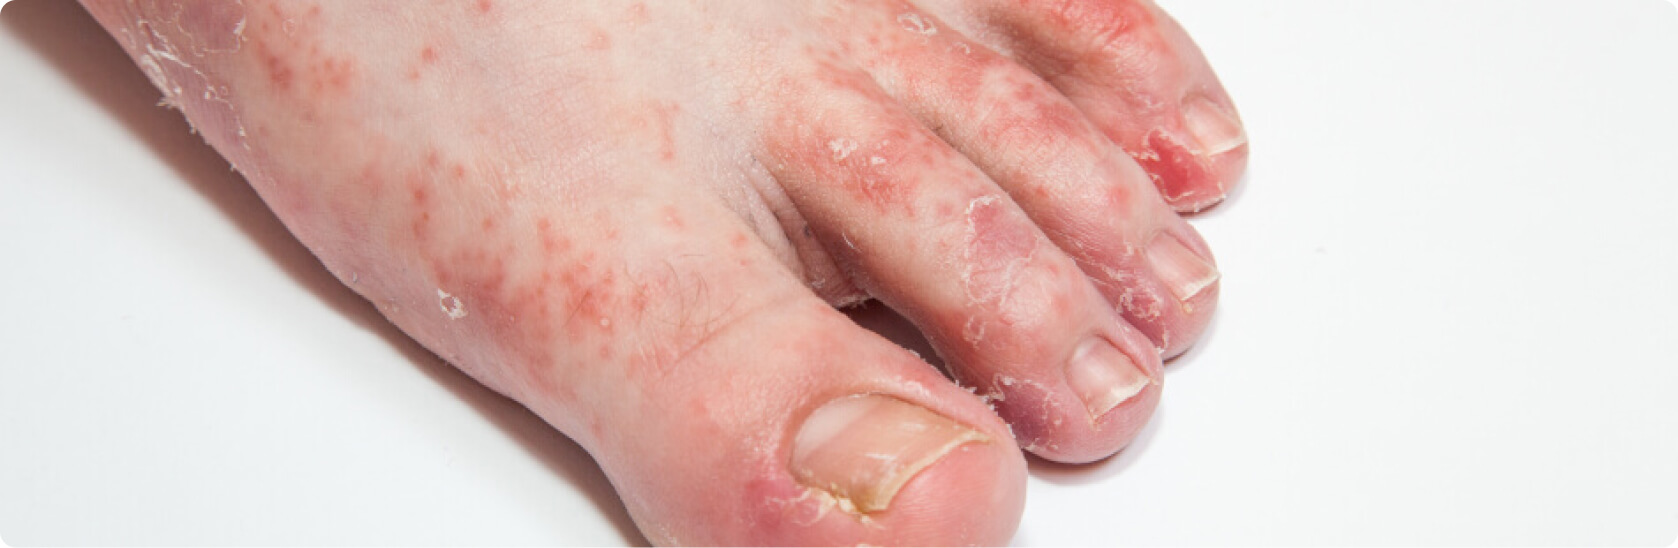 Fußpilz - Welche Risikofaktoren begünstigen eine Tinea pedis?